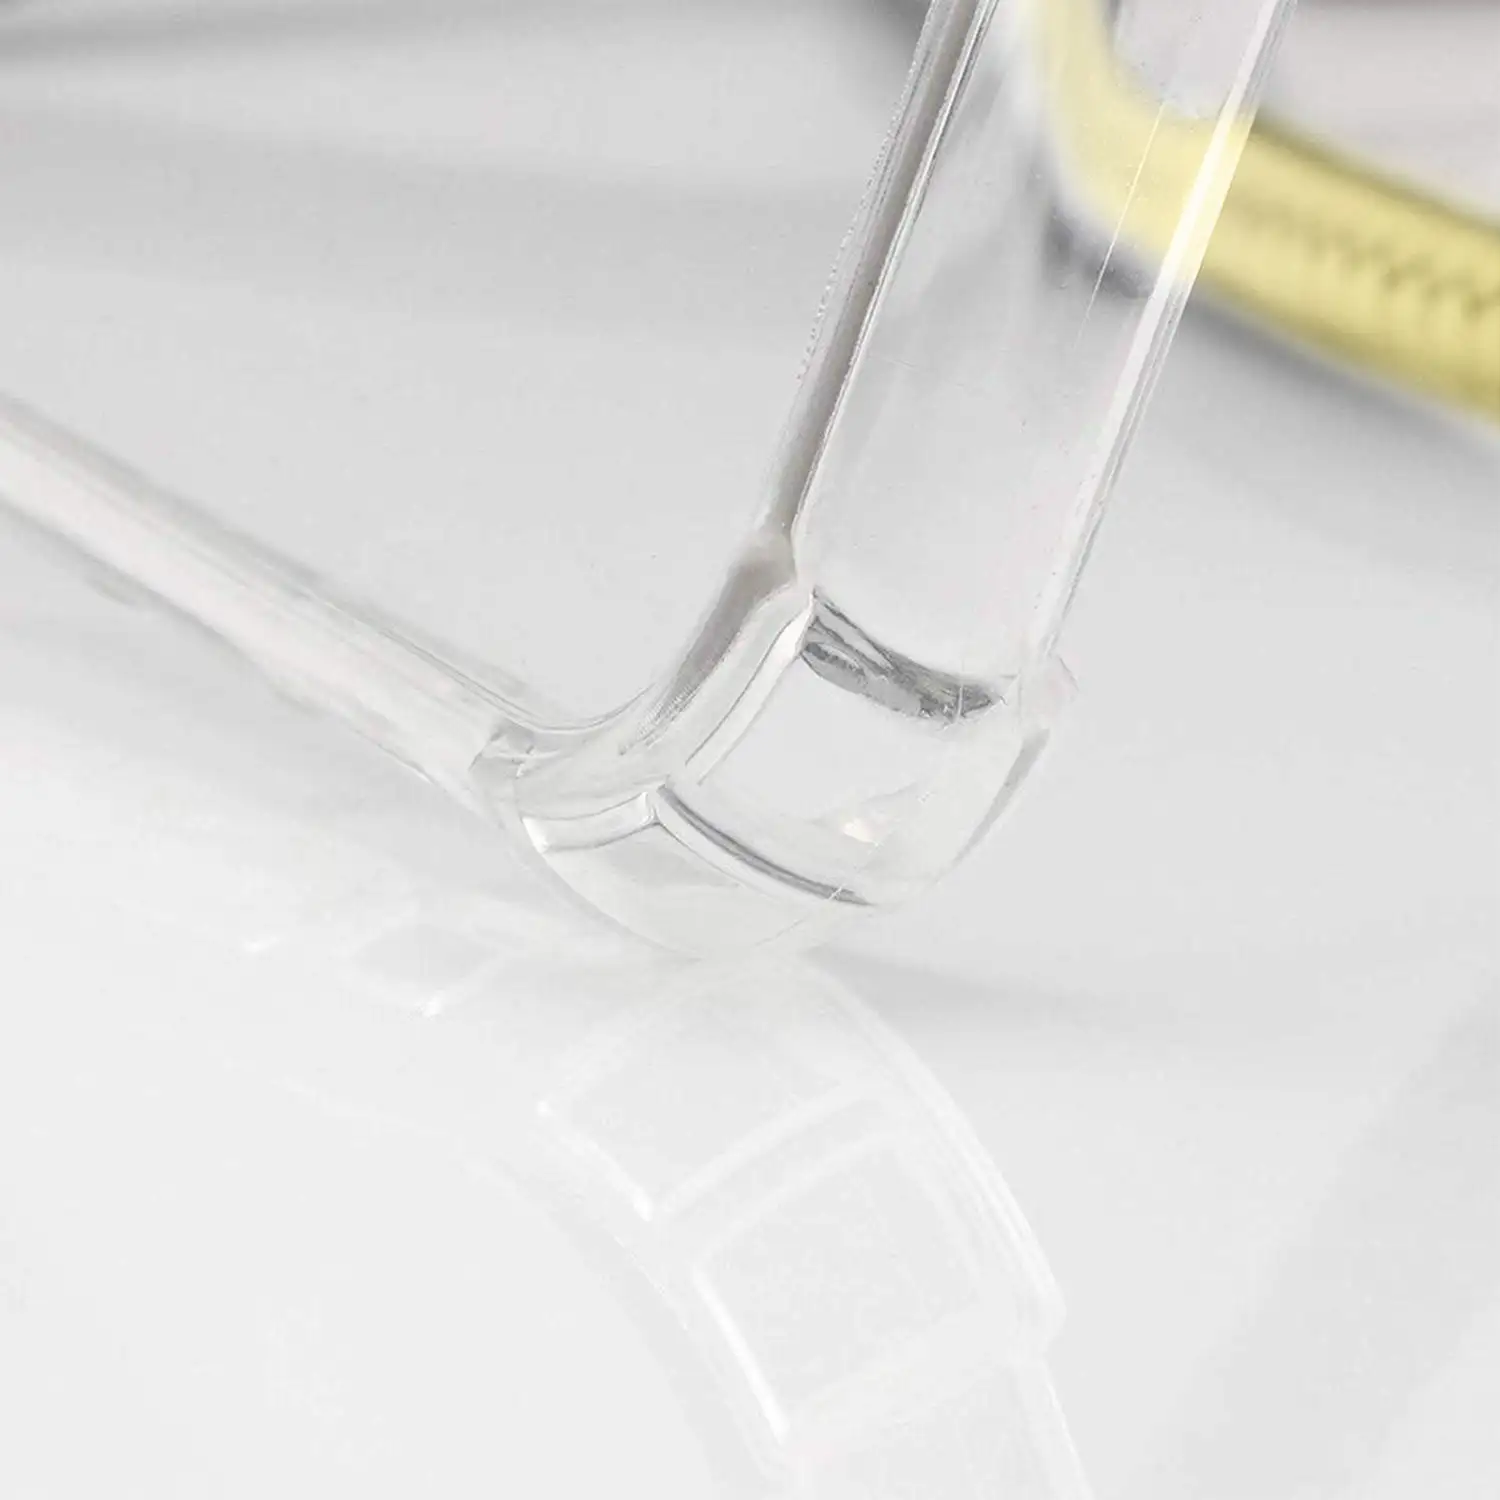 Carcasa transparente iPhone XS Max con colgante de nylon. Accesorio de moda, ajuste perfecto y máxima protección